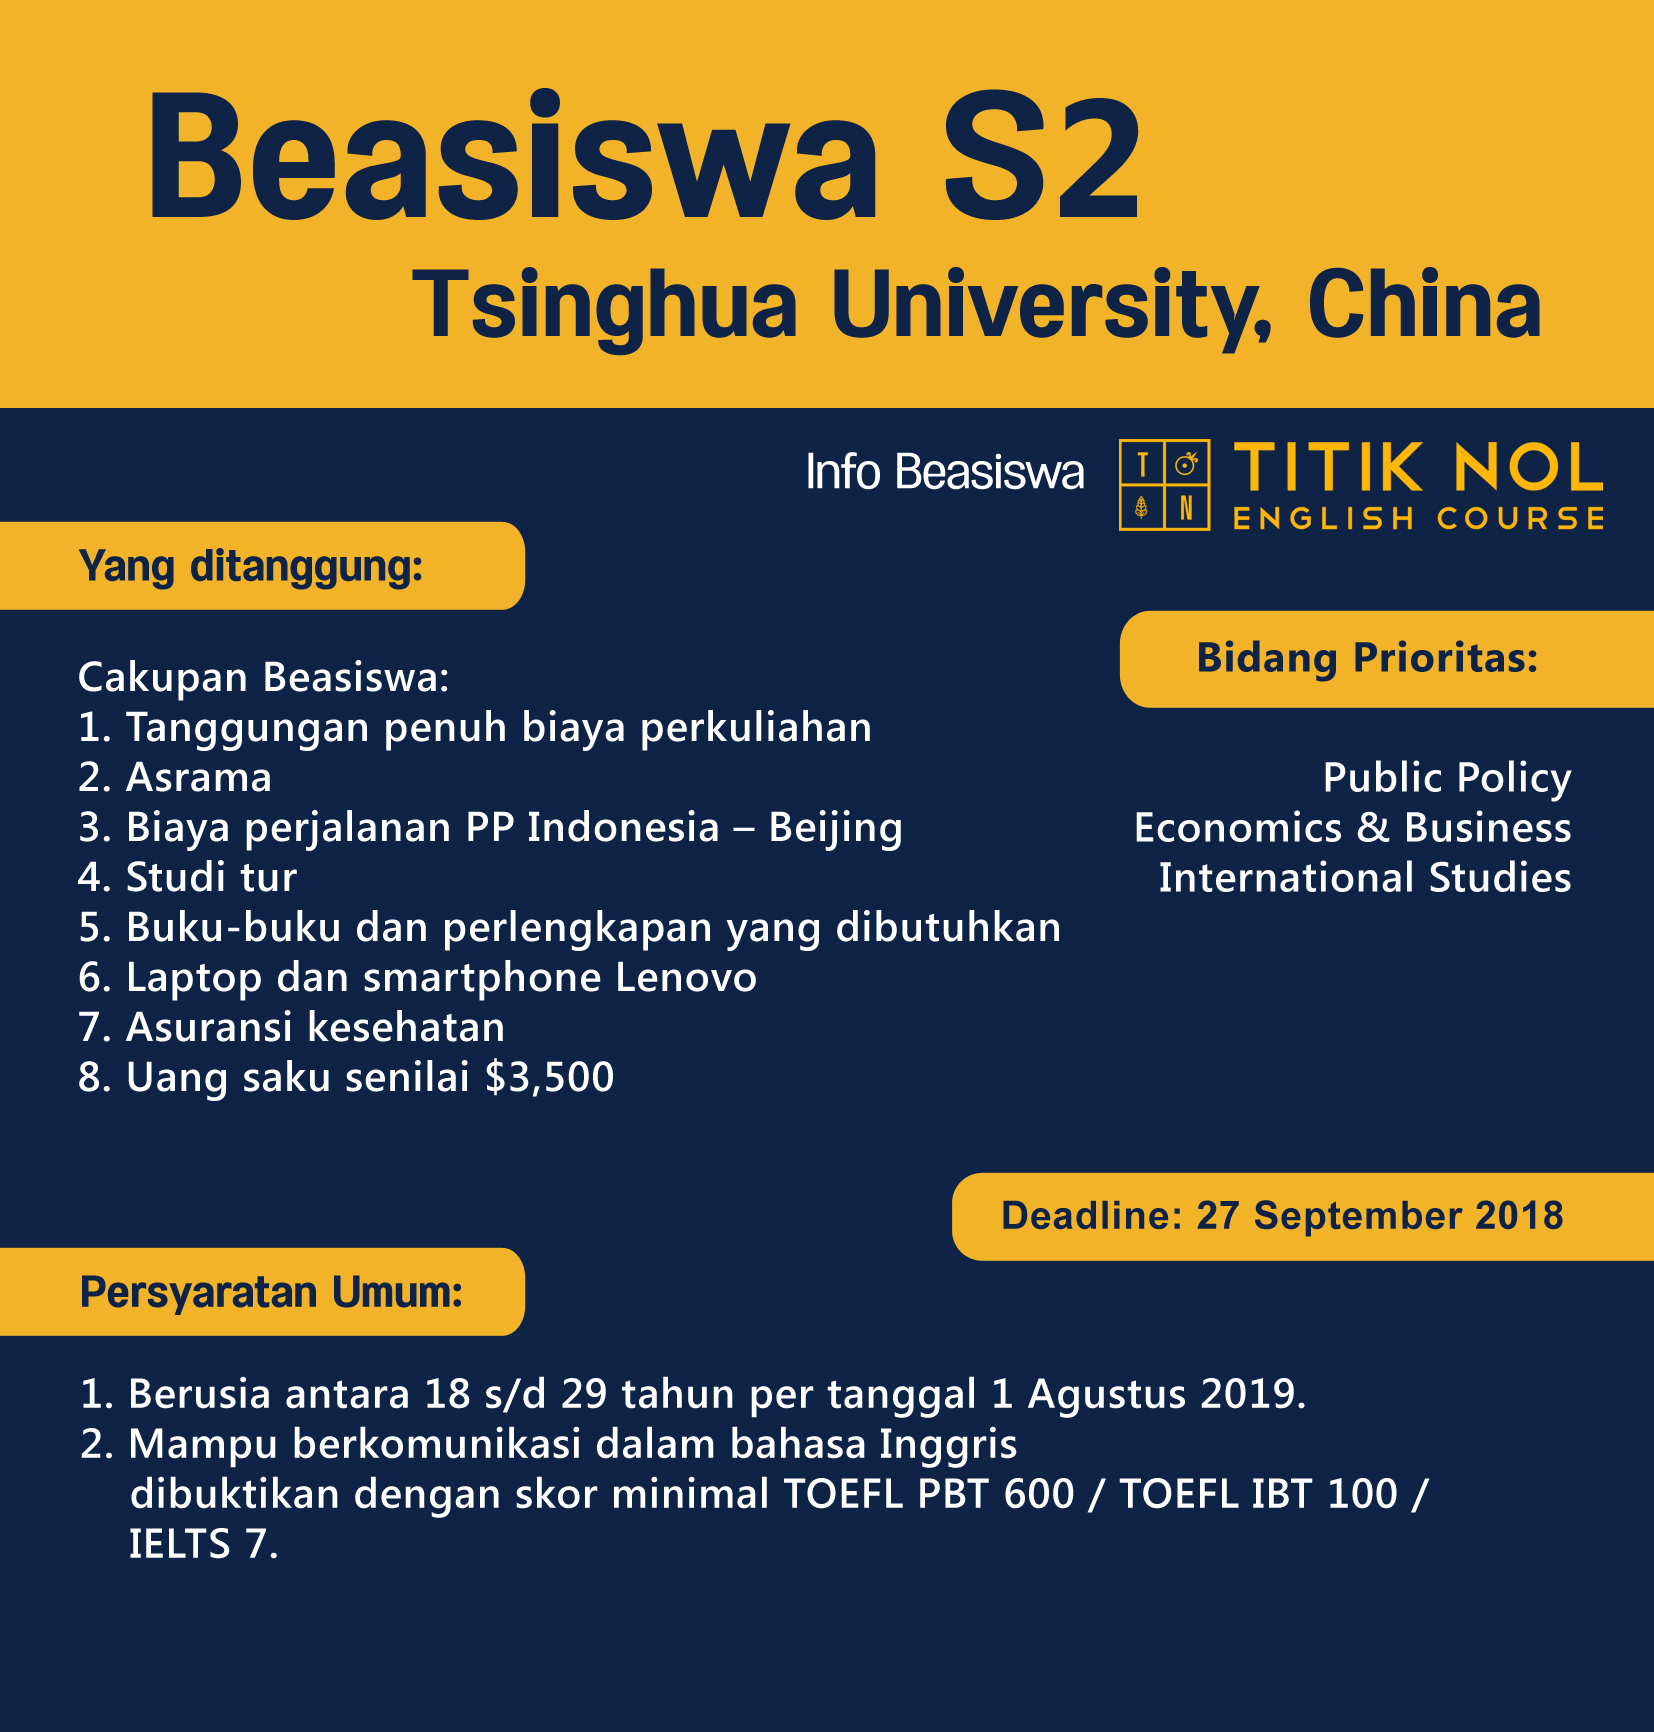 Program beasiswa S2 di Tsinghua University ini ditujukan bagi pelamar internasional termasuk Indonesia yang ingin menempuh